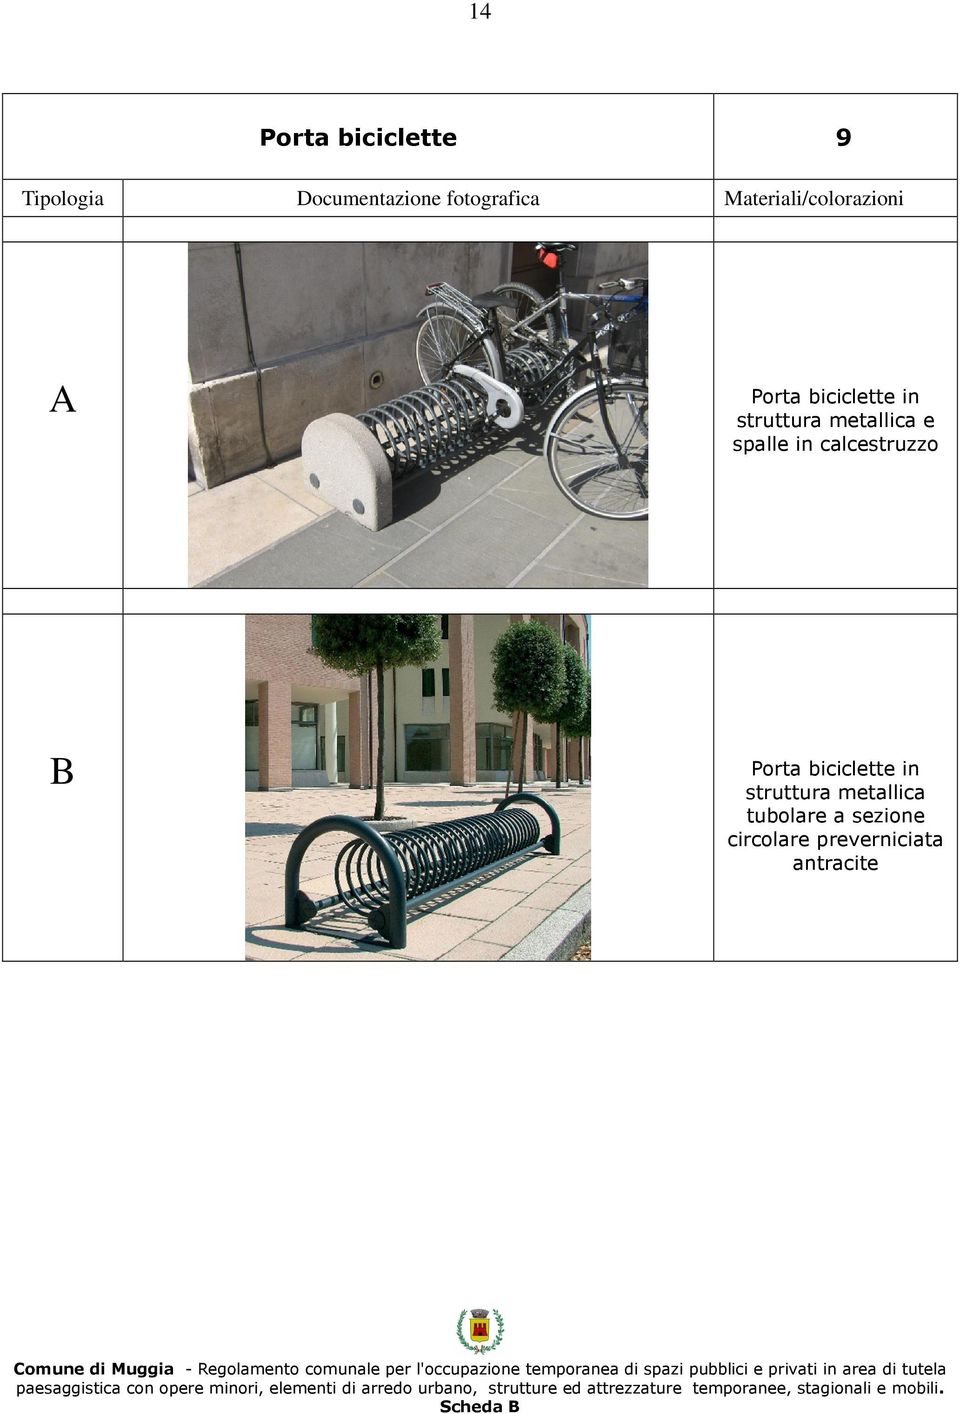 Porta biciclette in struttura metallica